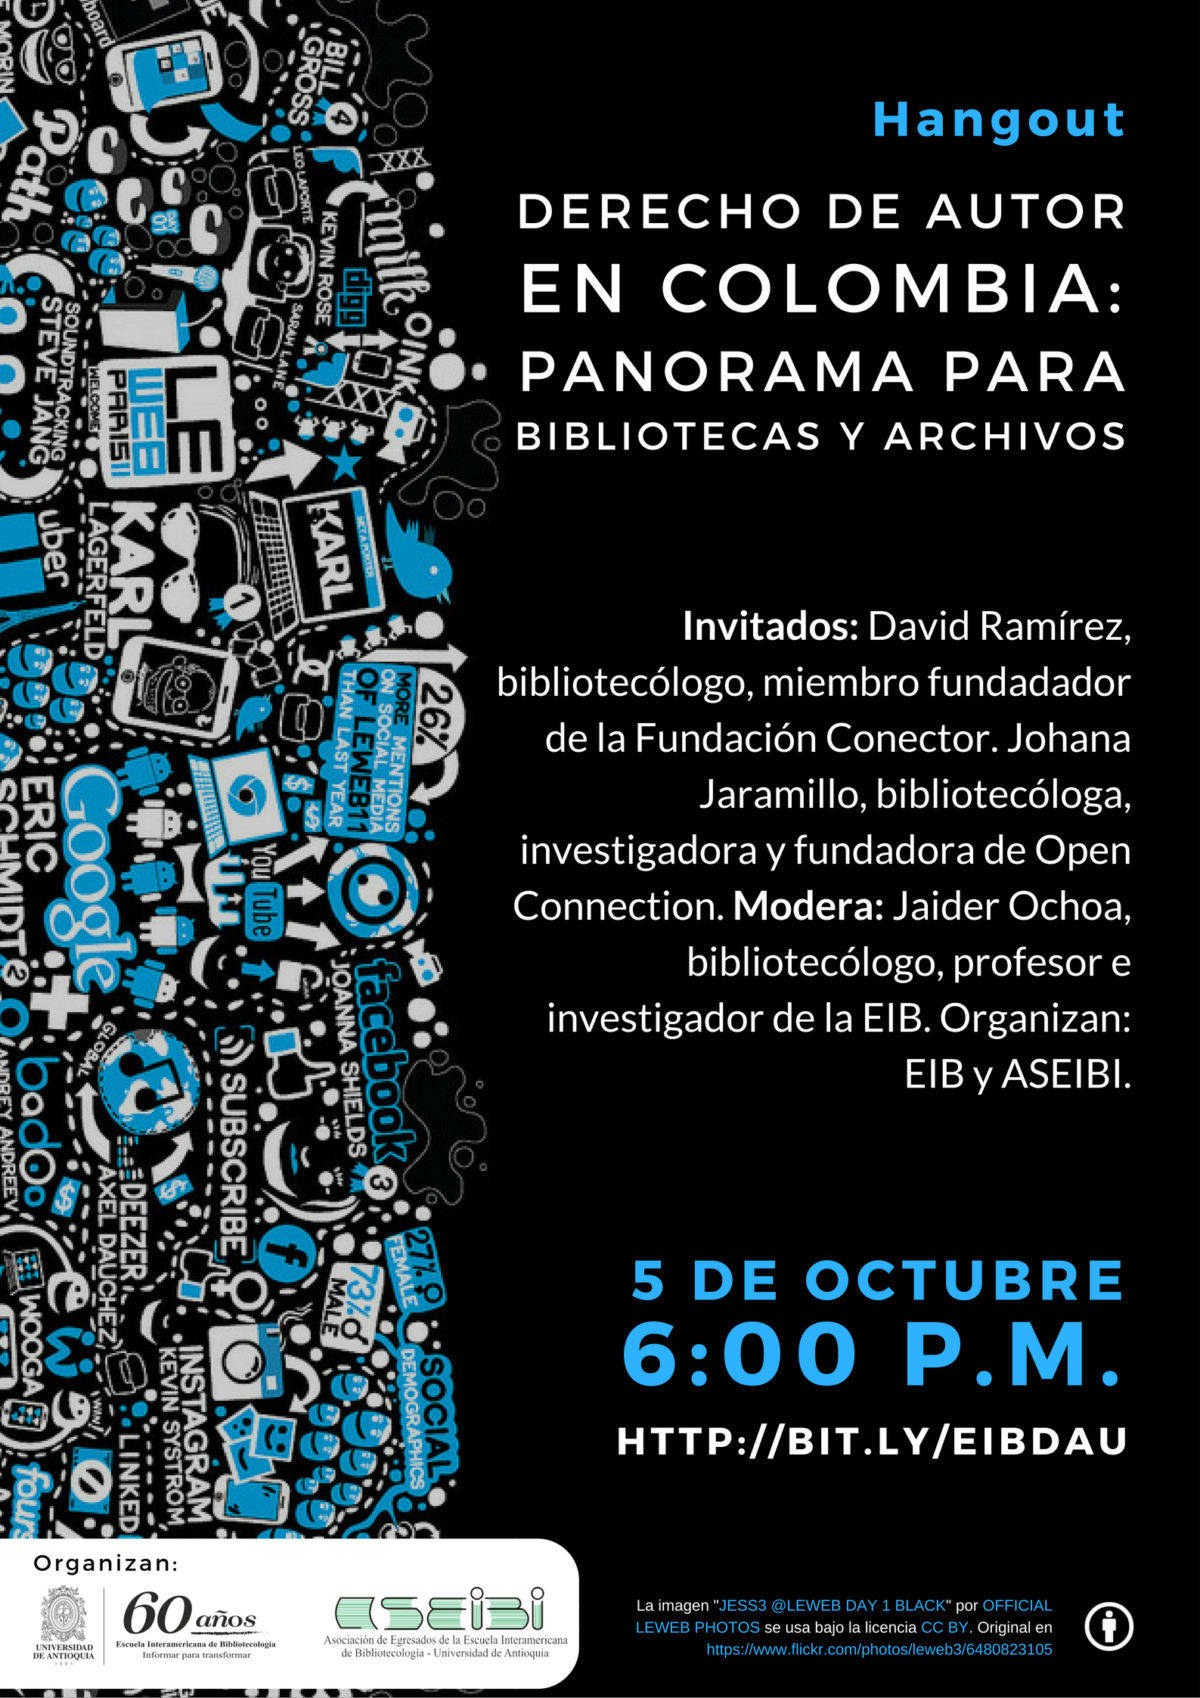 Derecho de autor en Colombia, panorama de bibliotecas y archivos